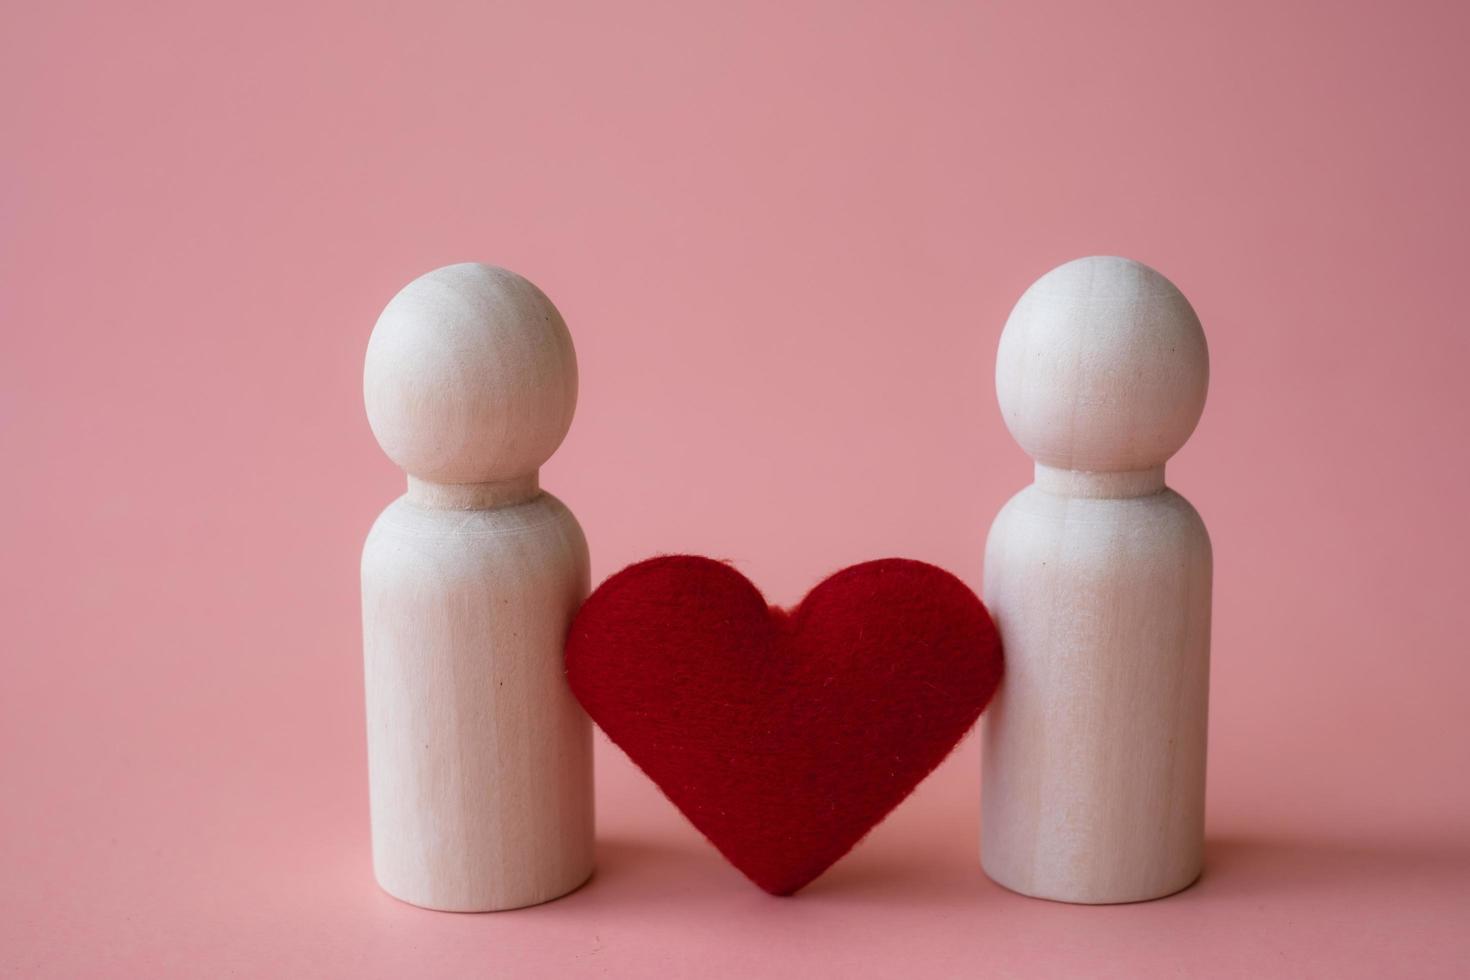 forme de coeur rouge entre figurines en bois de l'homme et de l'homme sur fond rose. aimer le concept lgbtq. concept de minorités et de communautés sexuelles photo